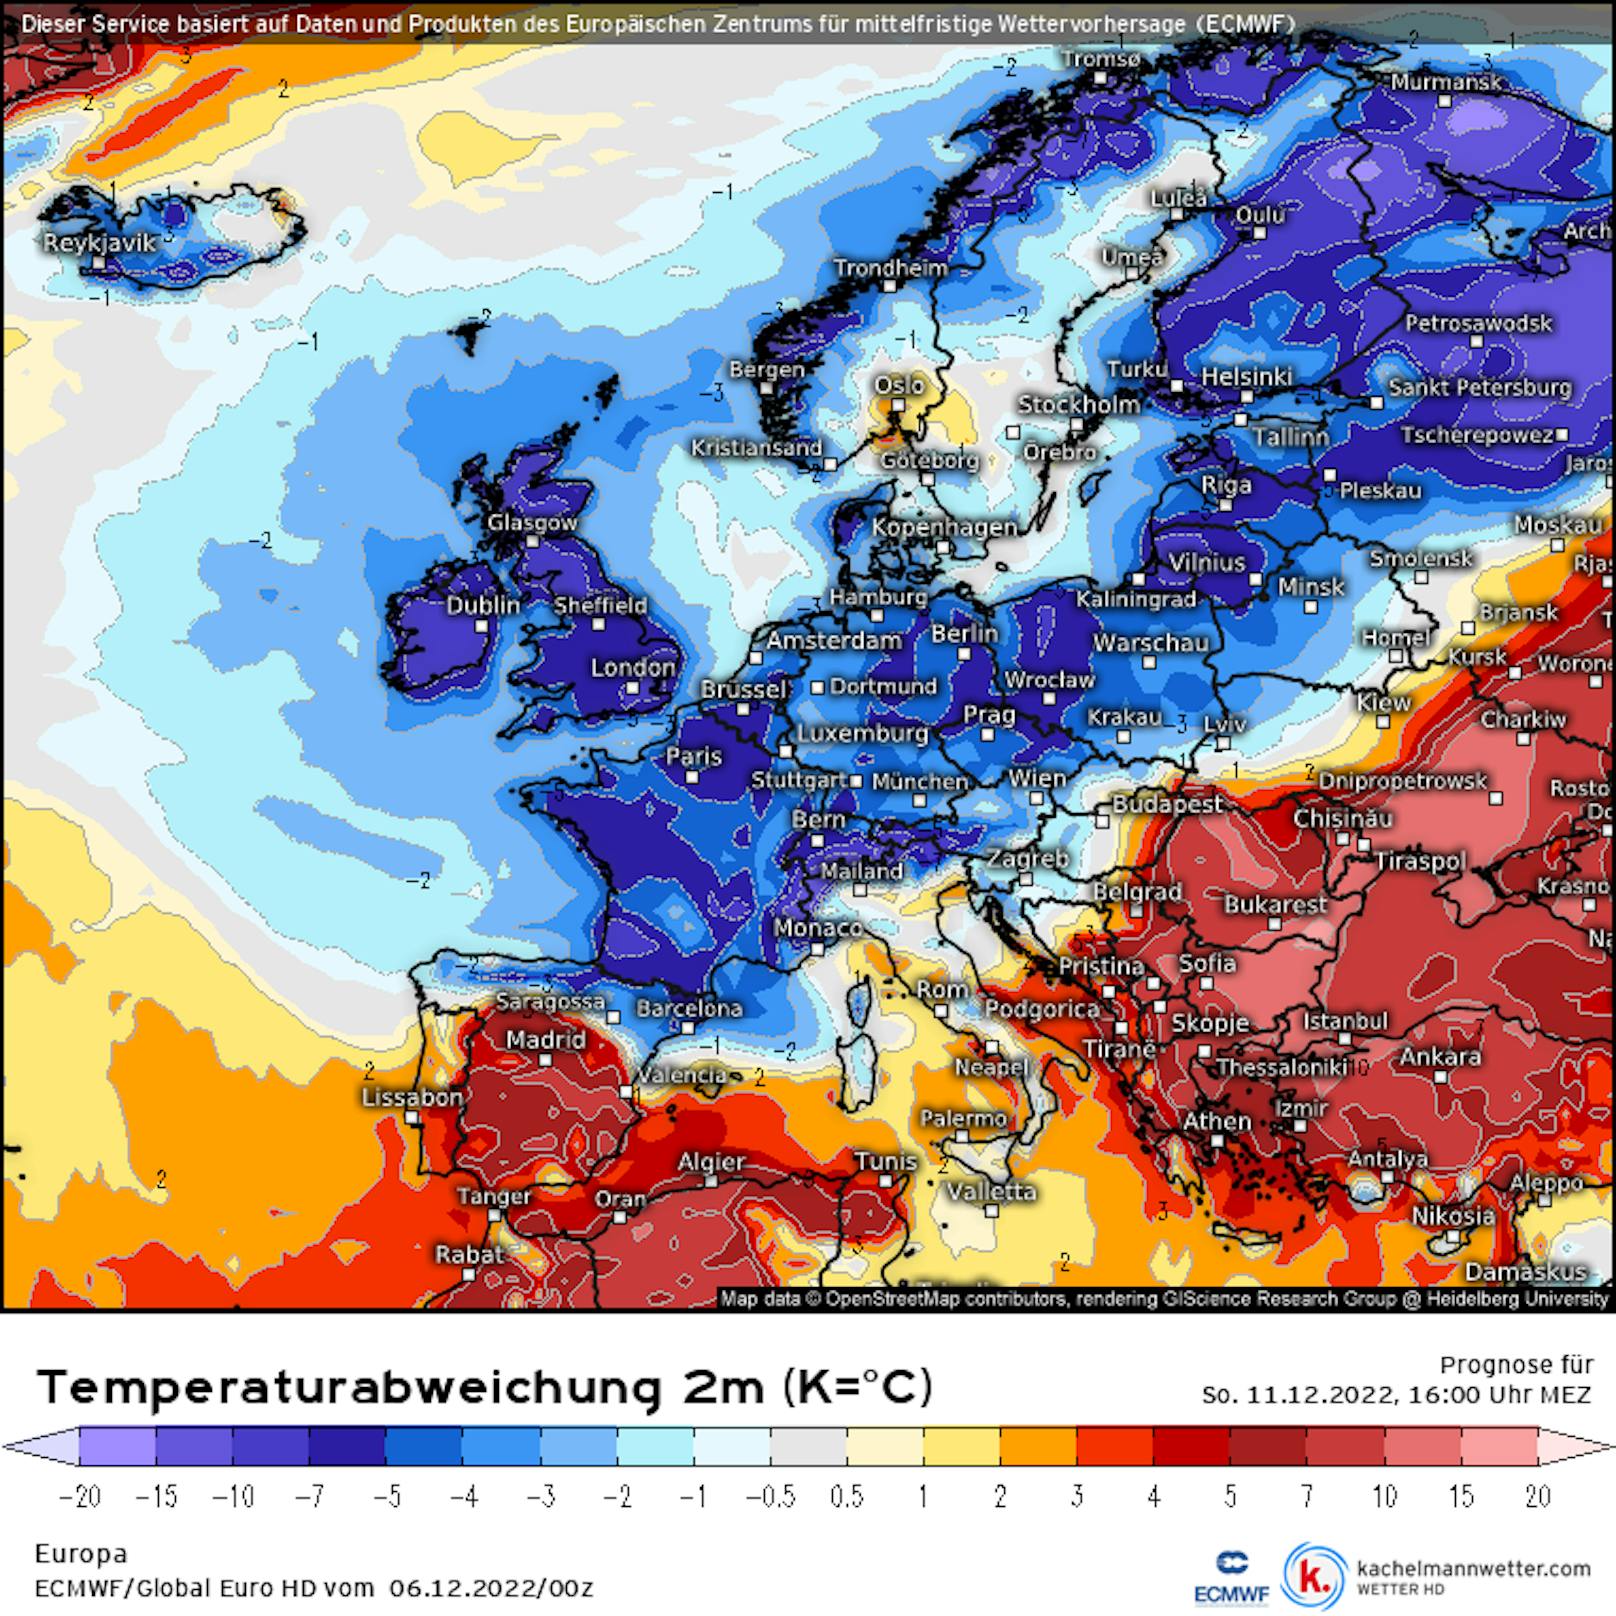 Jetzt wird es kalt: So kommt die Arktis-Luft bis 14.12. nach Österreich.